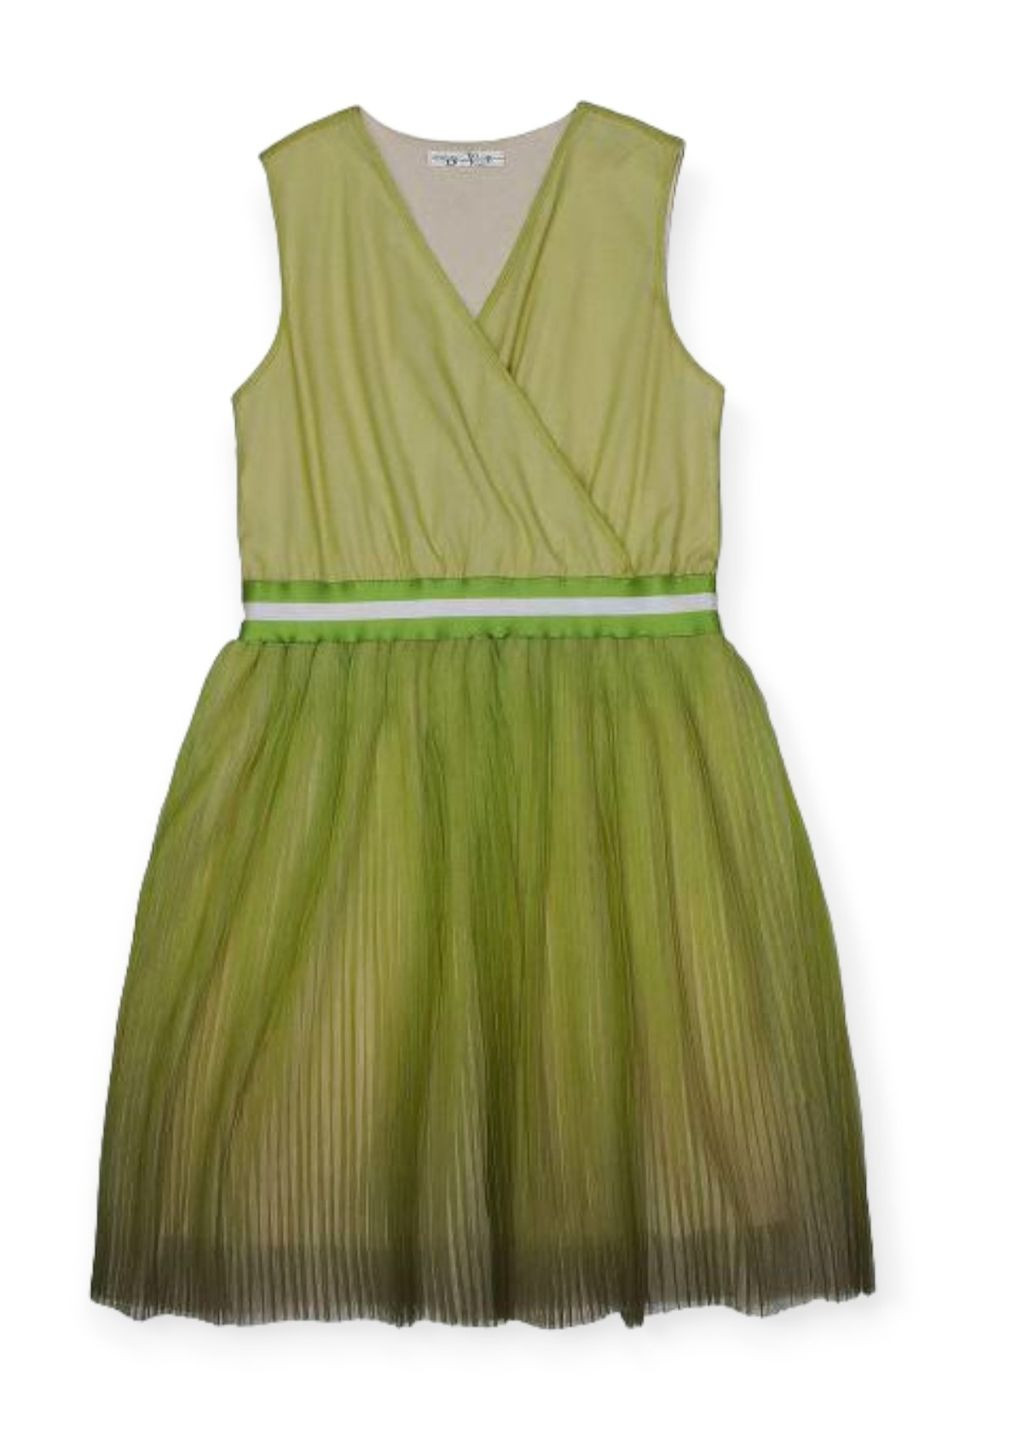 Салатова сукня для дівчинки плісерована tbt147 світло-зелена To Be Too (271690527)